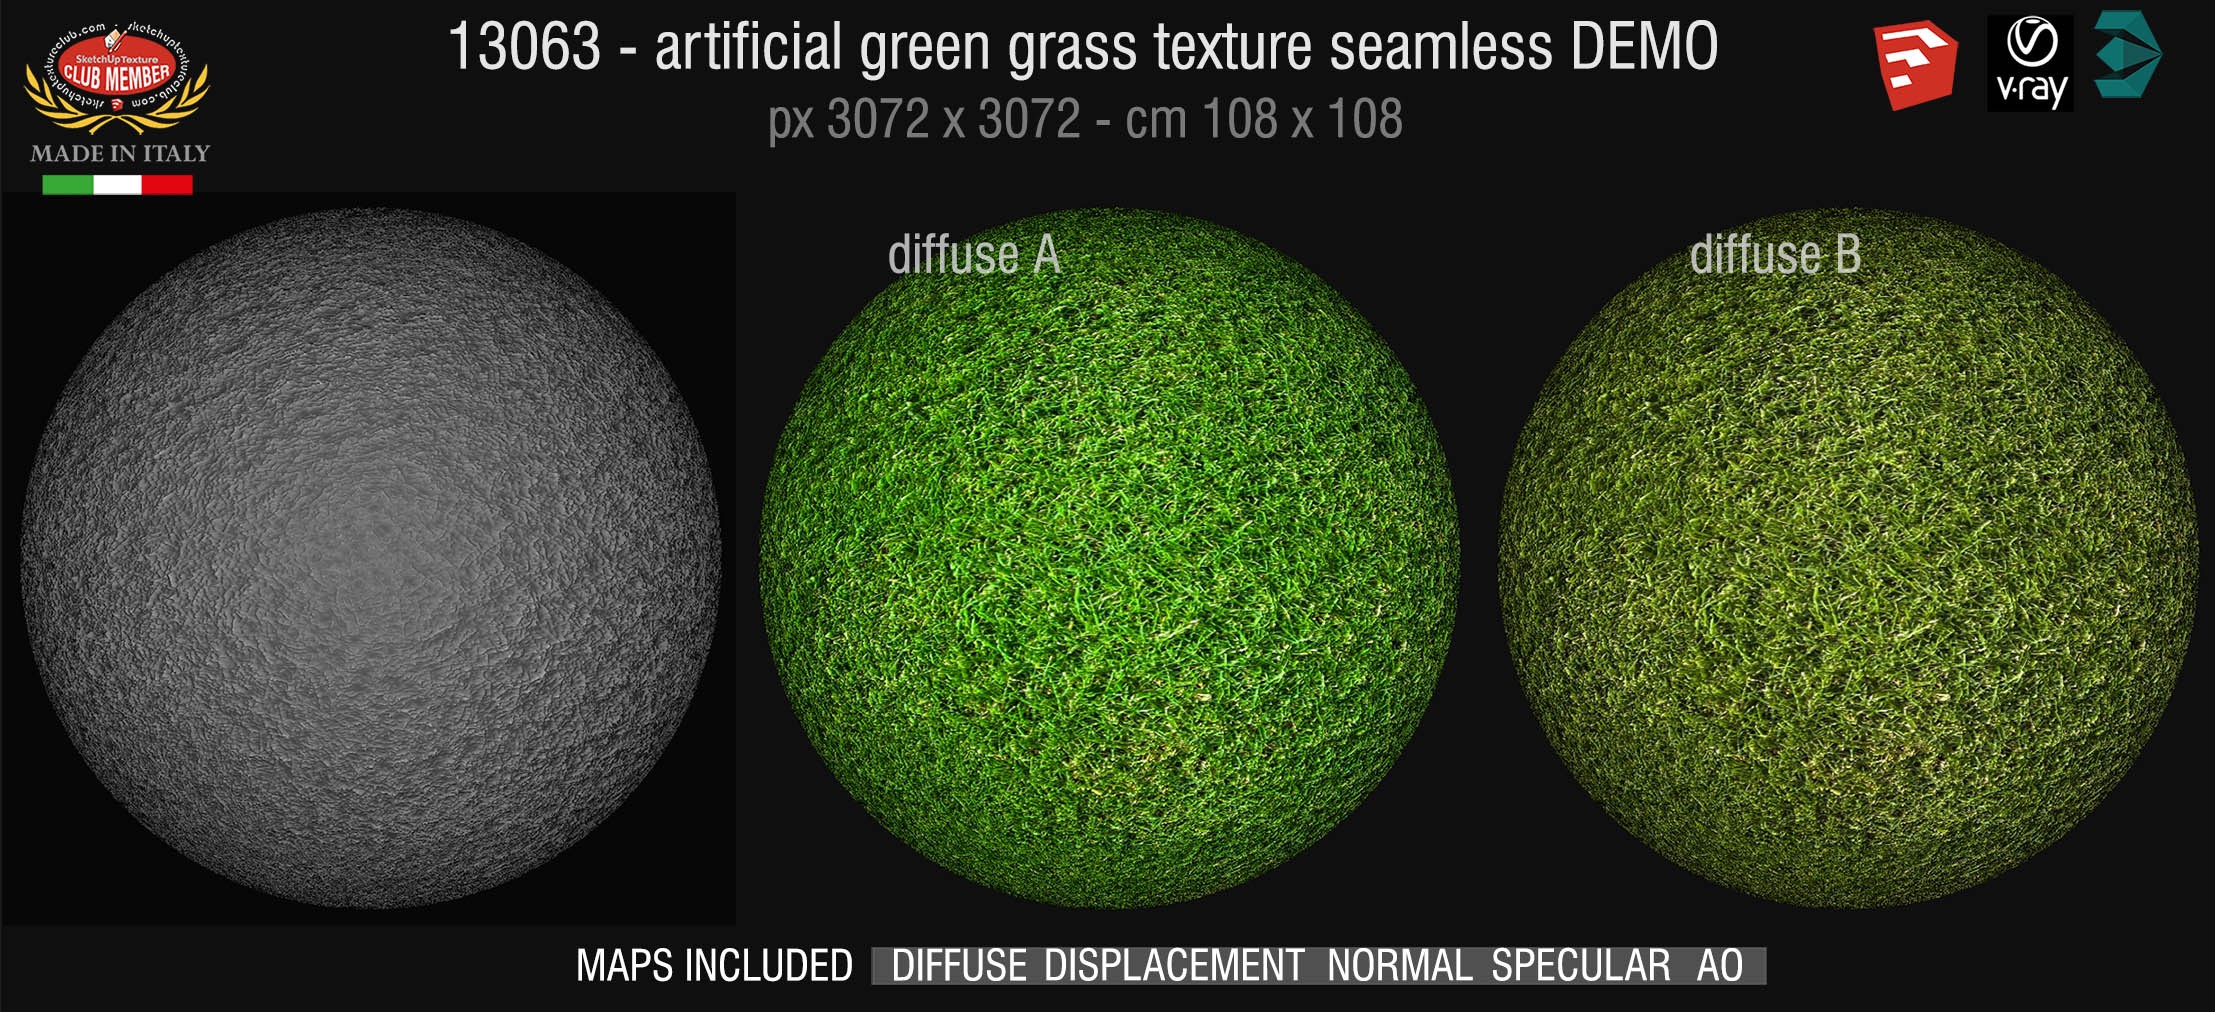 13063 HR Artificial green grass texture + maps DEMO